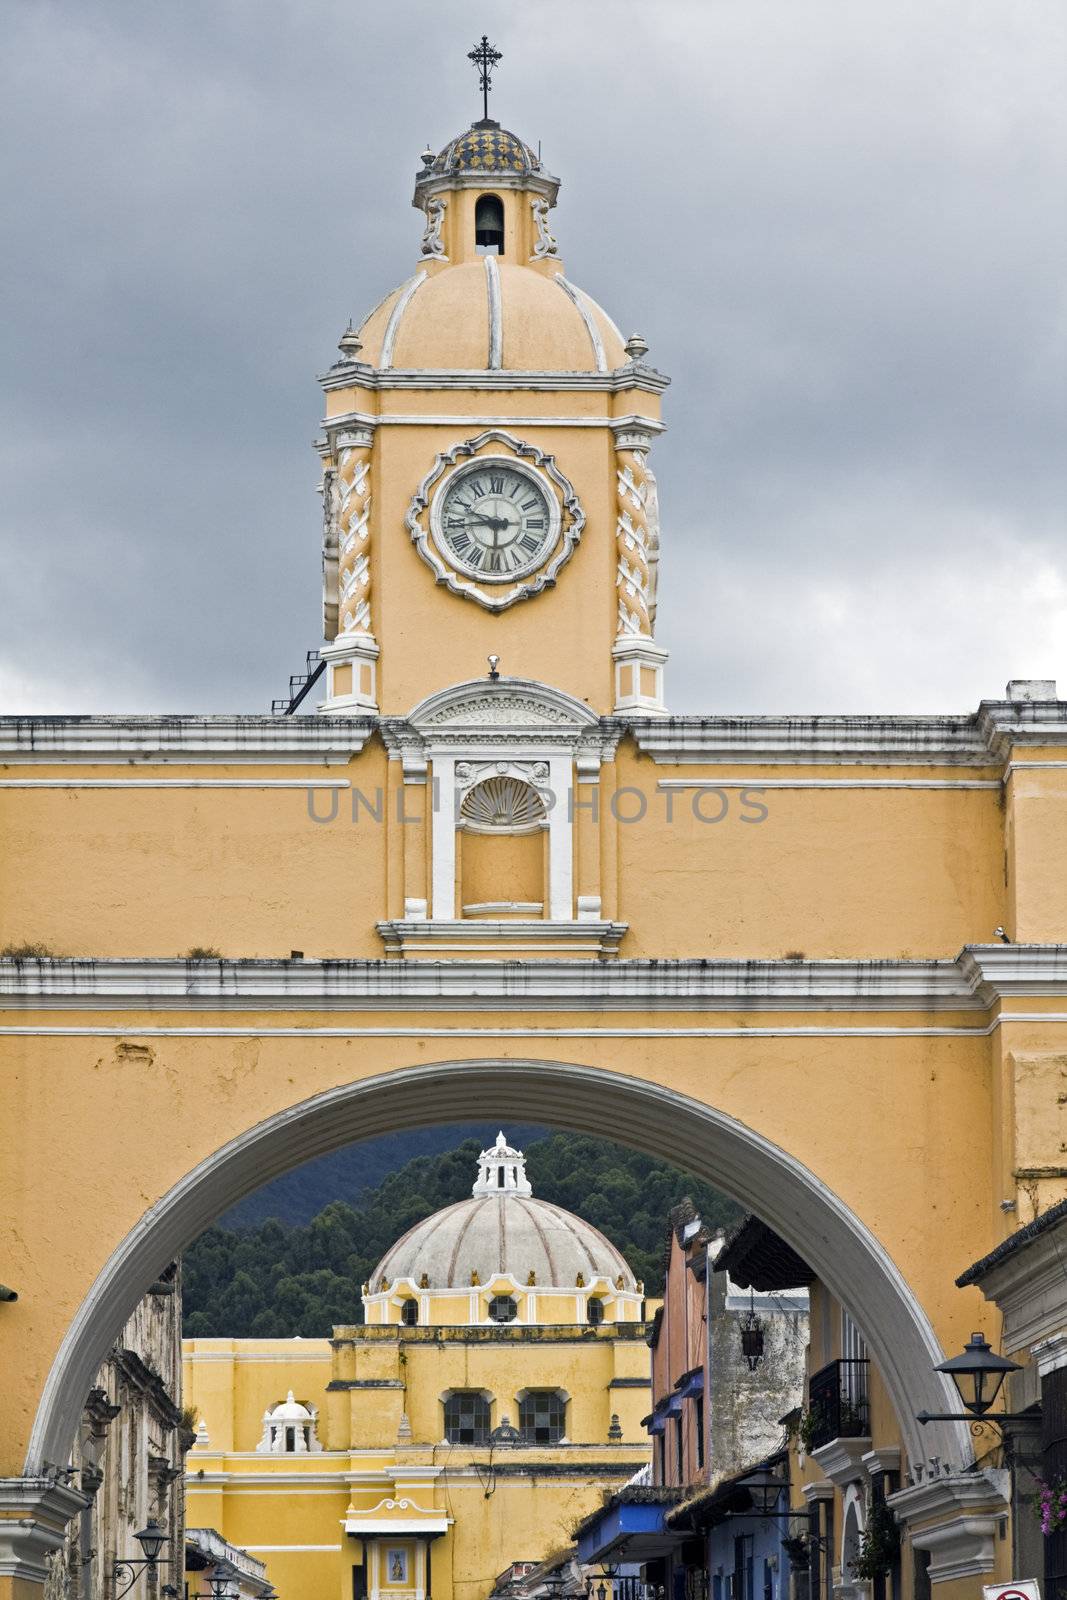 Arco de Santa Catalina by benkrut